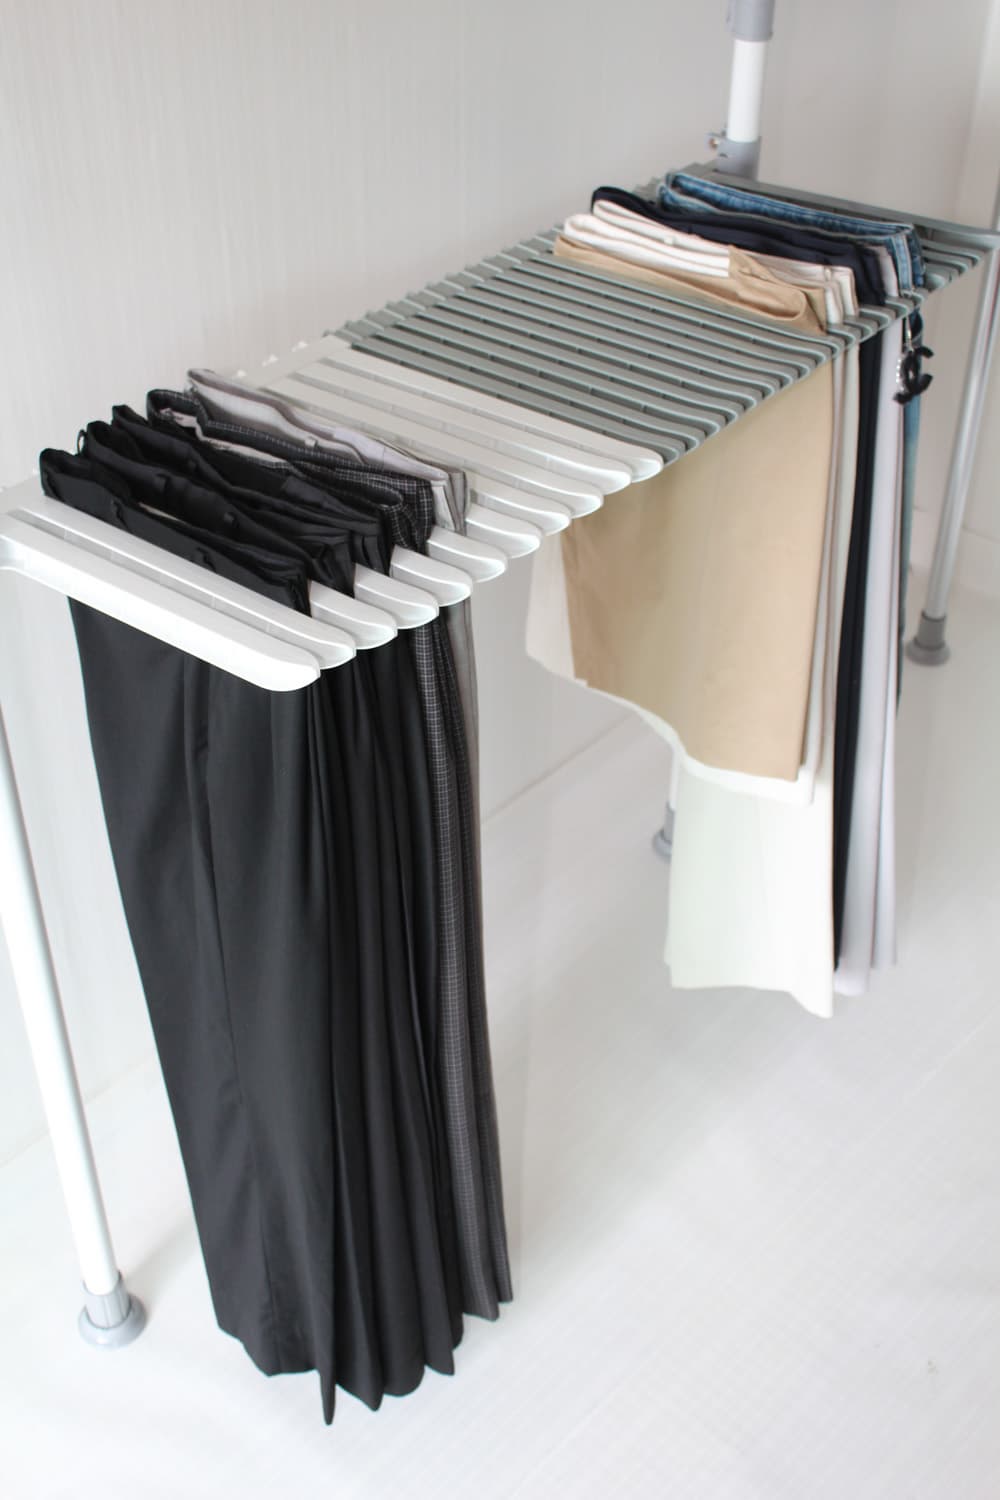 Clipless pants hanger rack